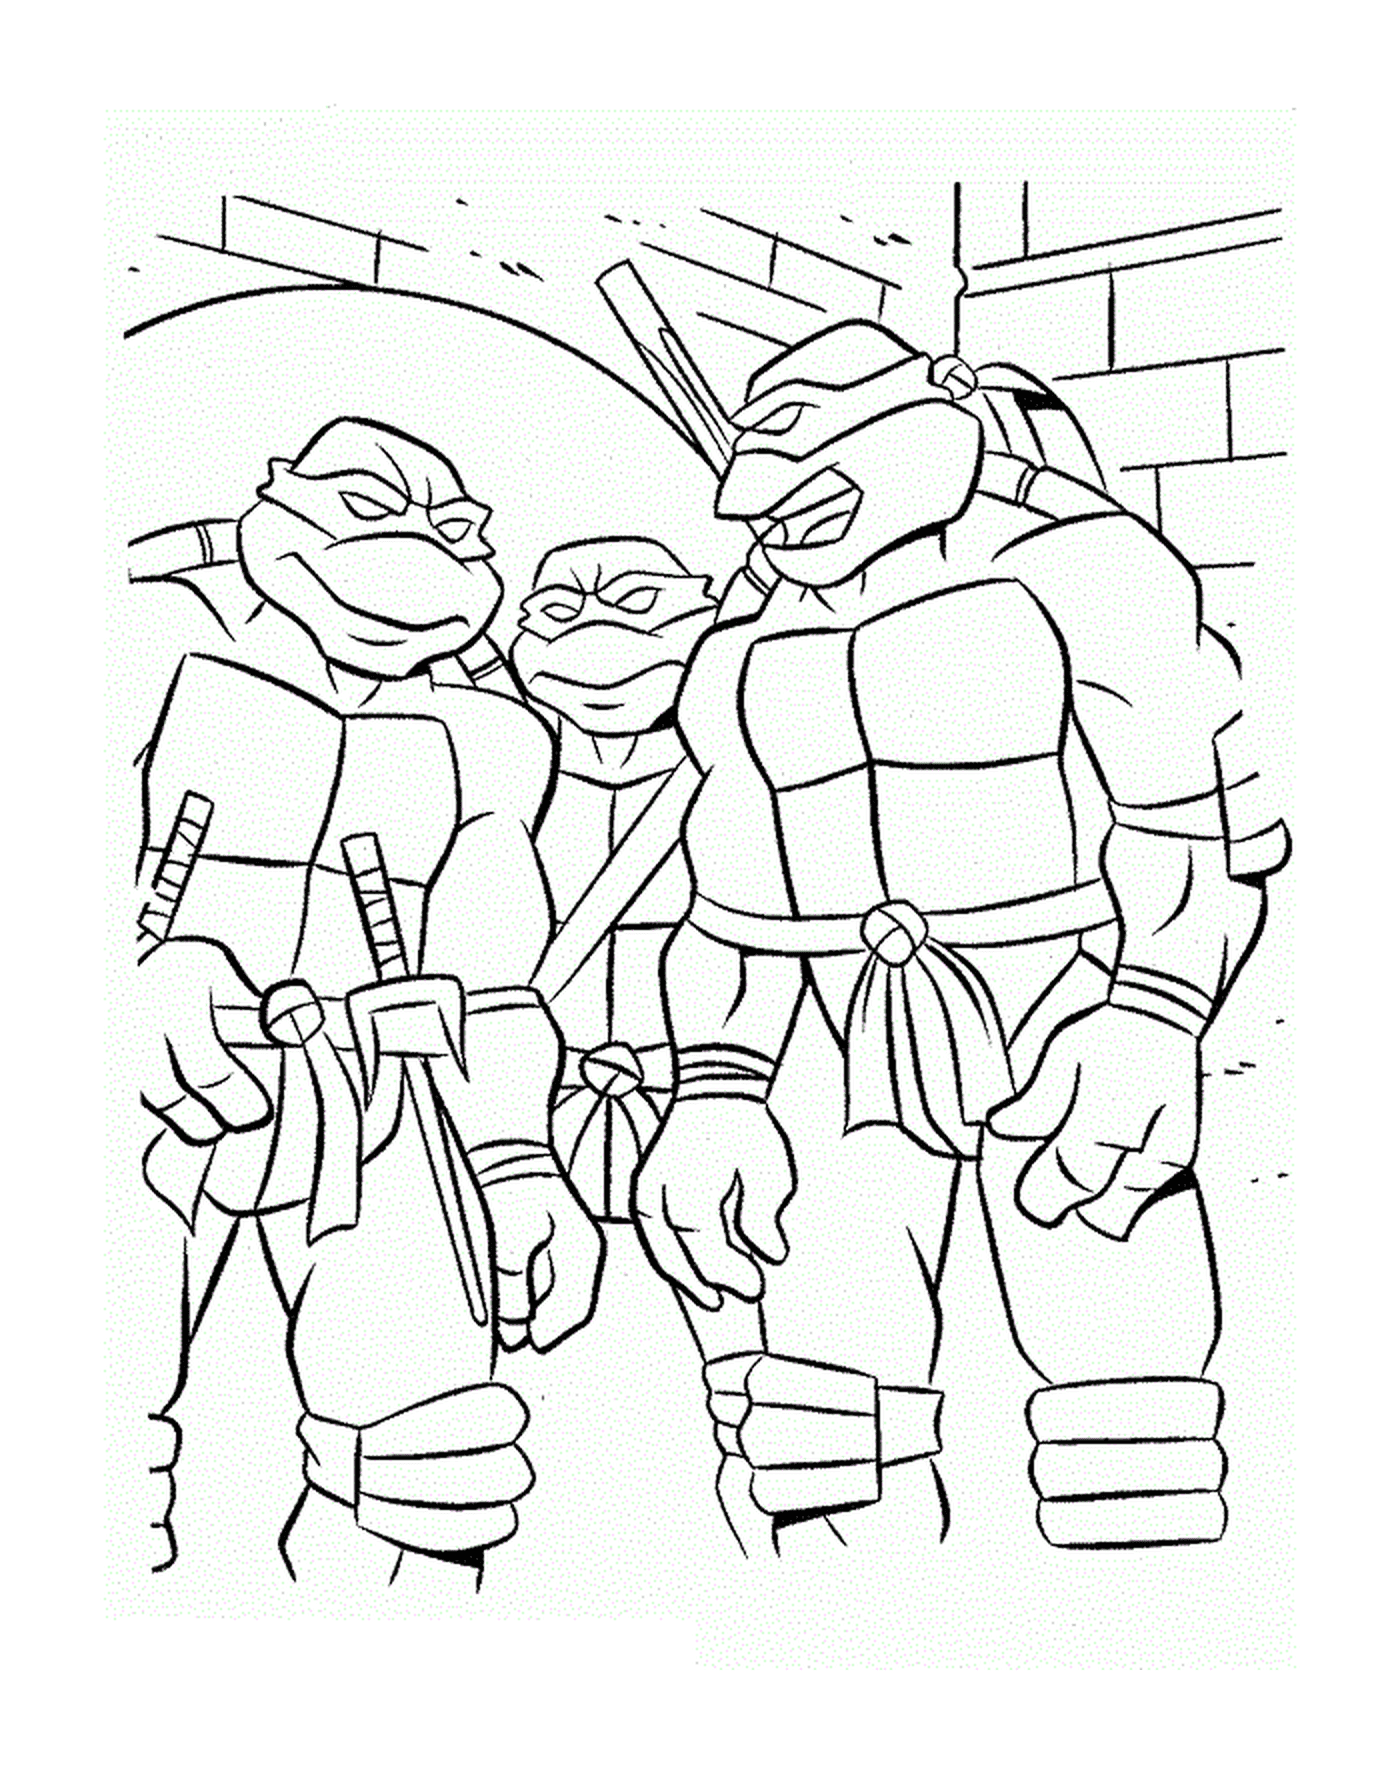  忍者海龟小组 